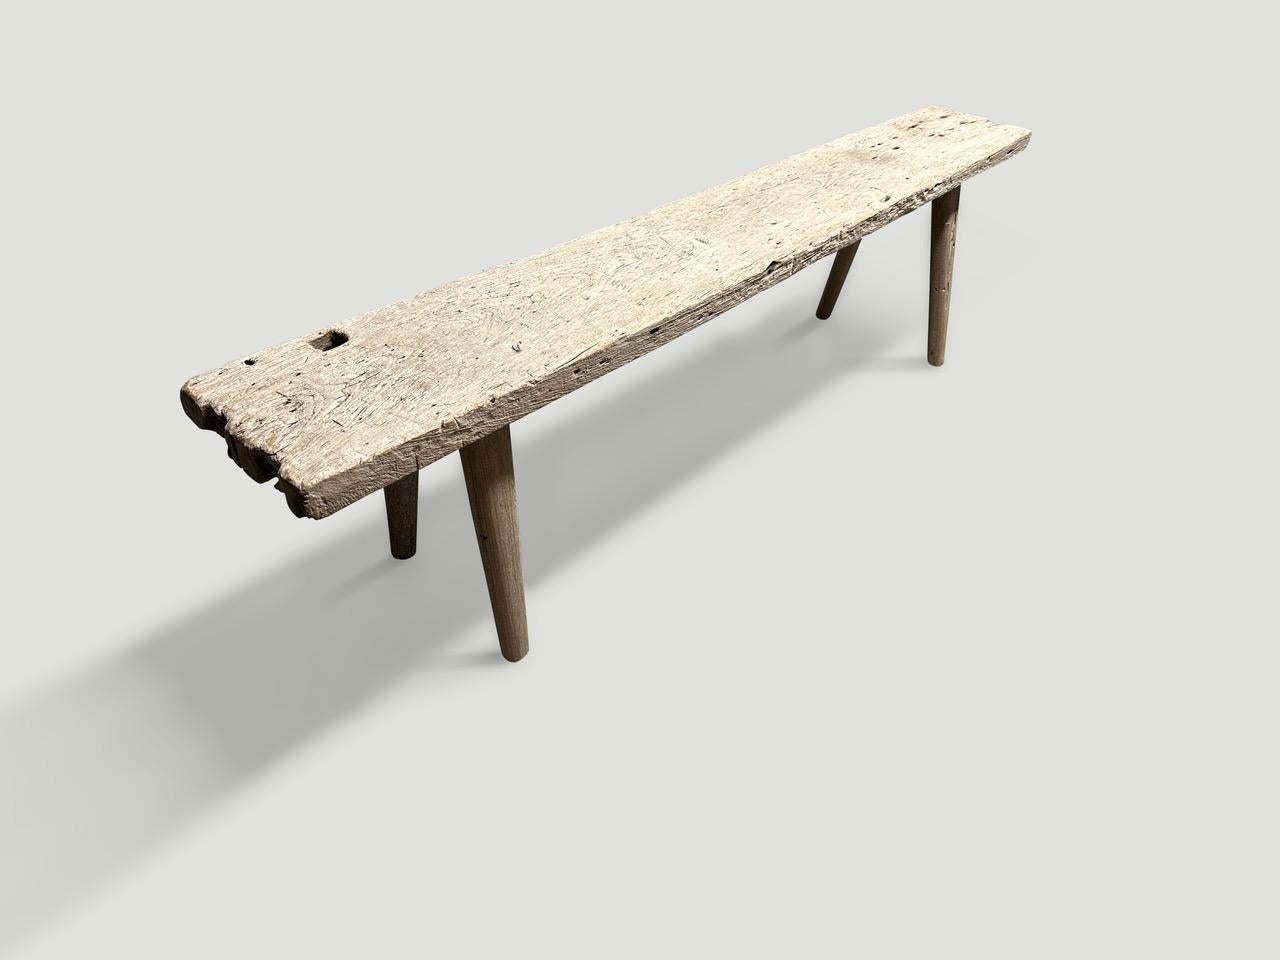 Eine einzelne dicke antike Holzplatte mit schönem Charakter im Holz. Wir haben glatte, minimalistische Teakholzbeine hinzugefügt, um diese schöne Bank herzustellen, und sie mit einer geheimen Zutat behandelt, die die einzigartige Holzmaserung zum